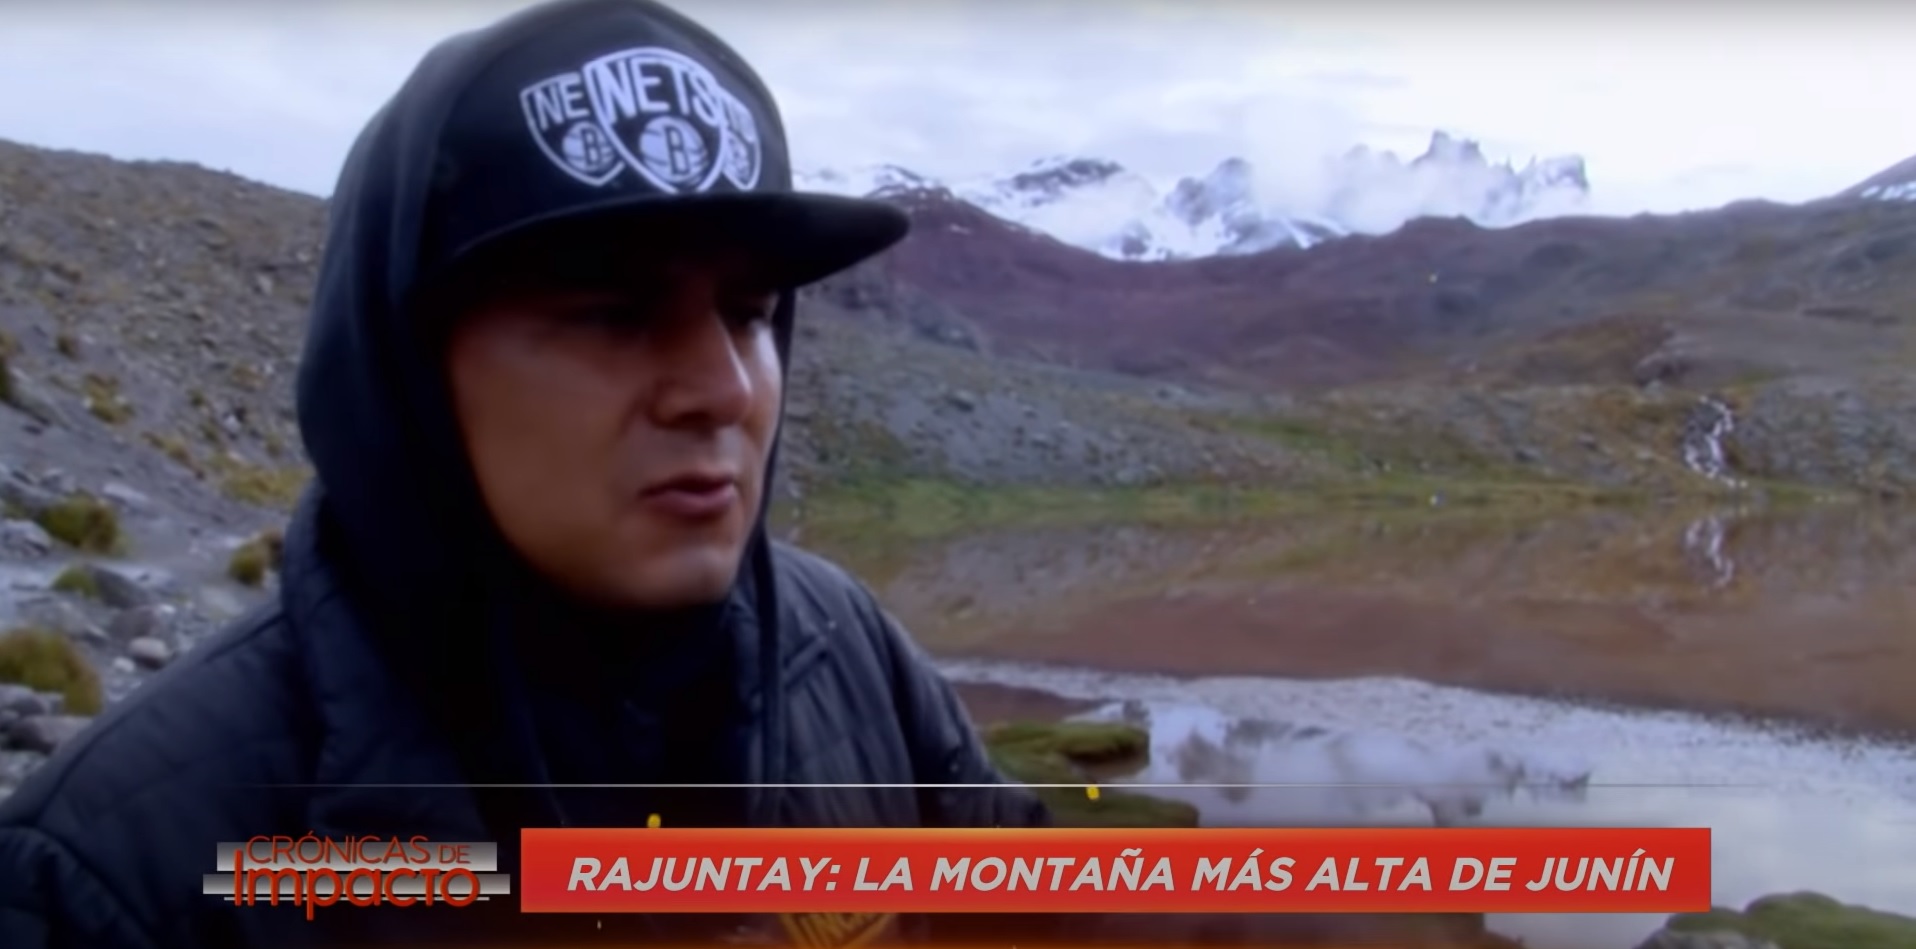 Crónicas de impacto: Rajuntay, la montaña más alta de Junín